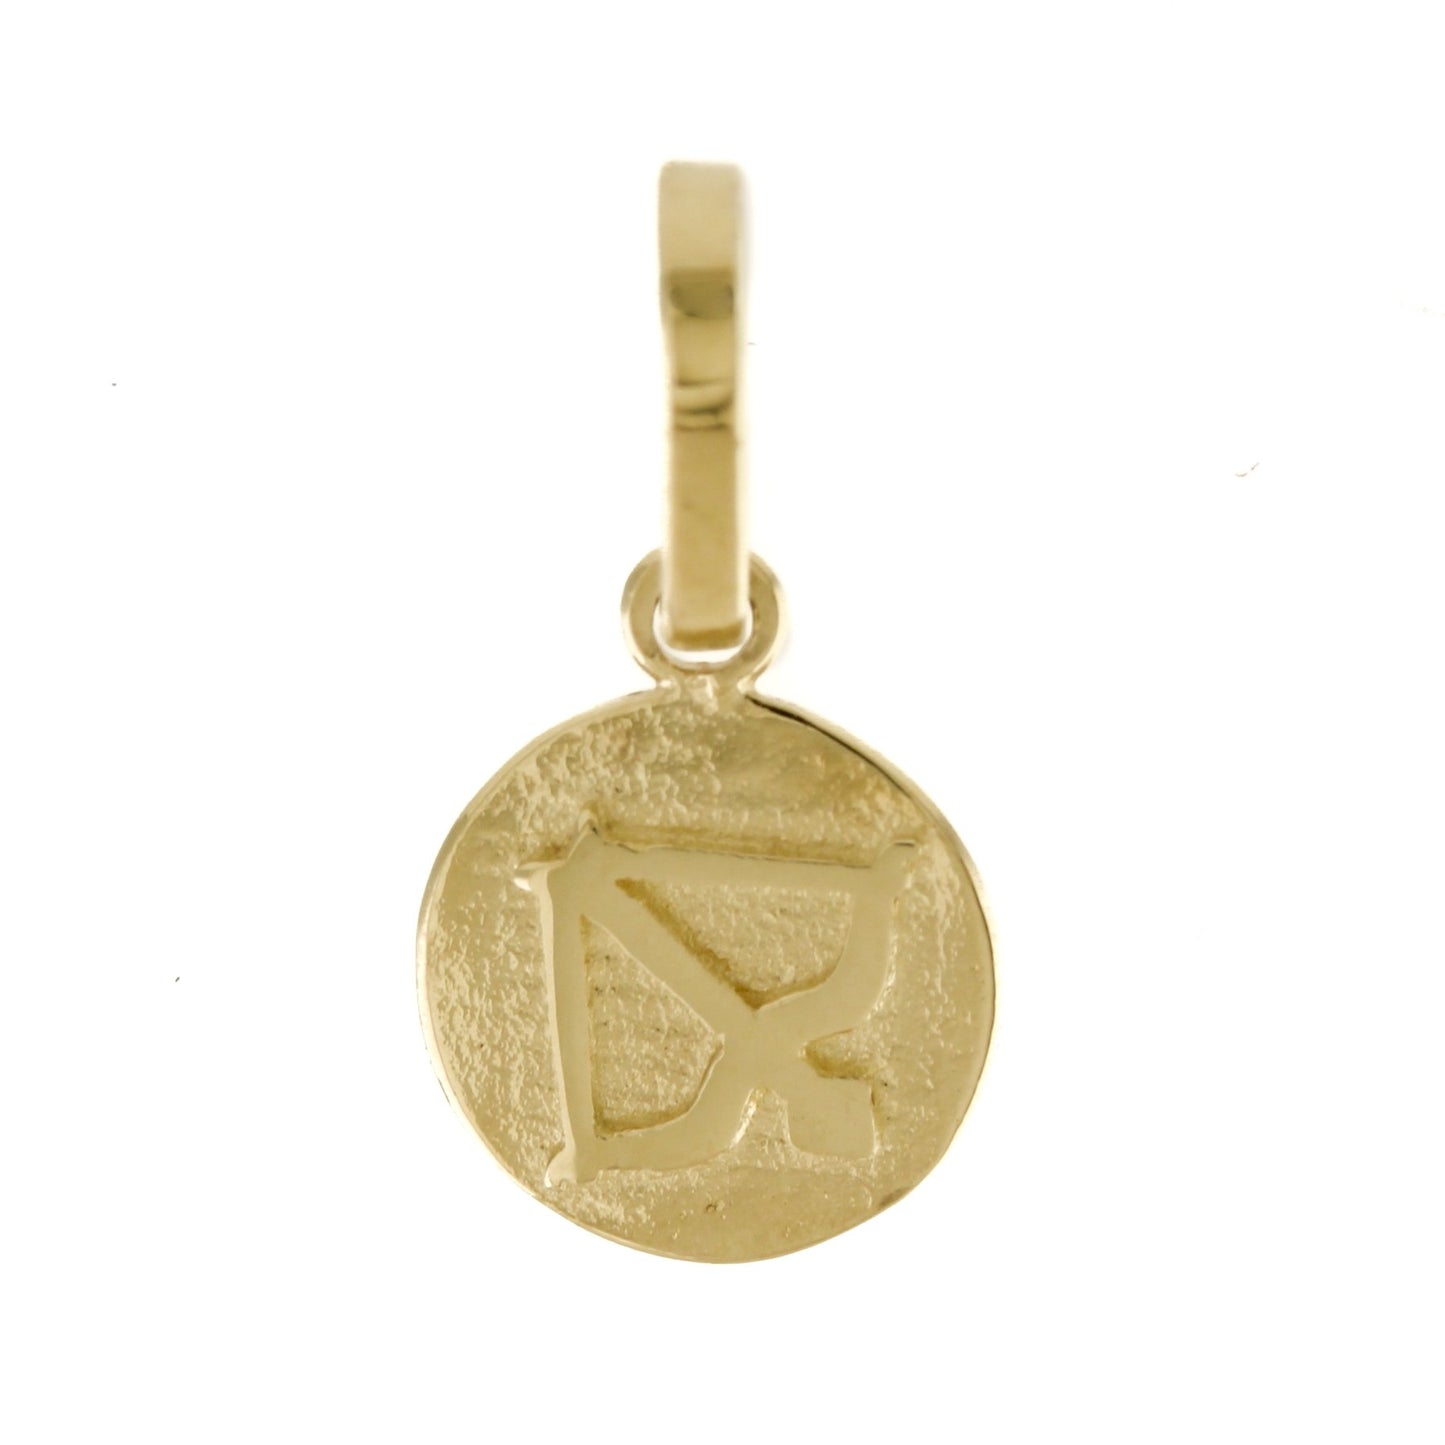 10k Zodiac Charms - Kingdom Jewelry